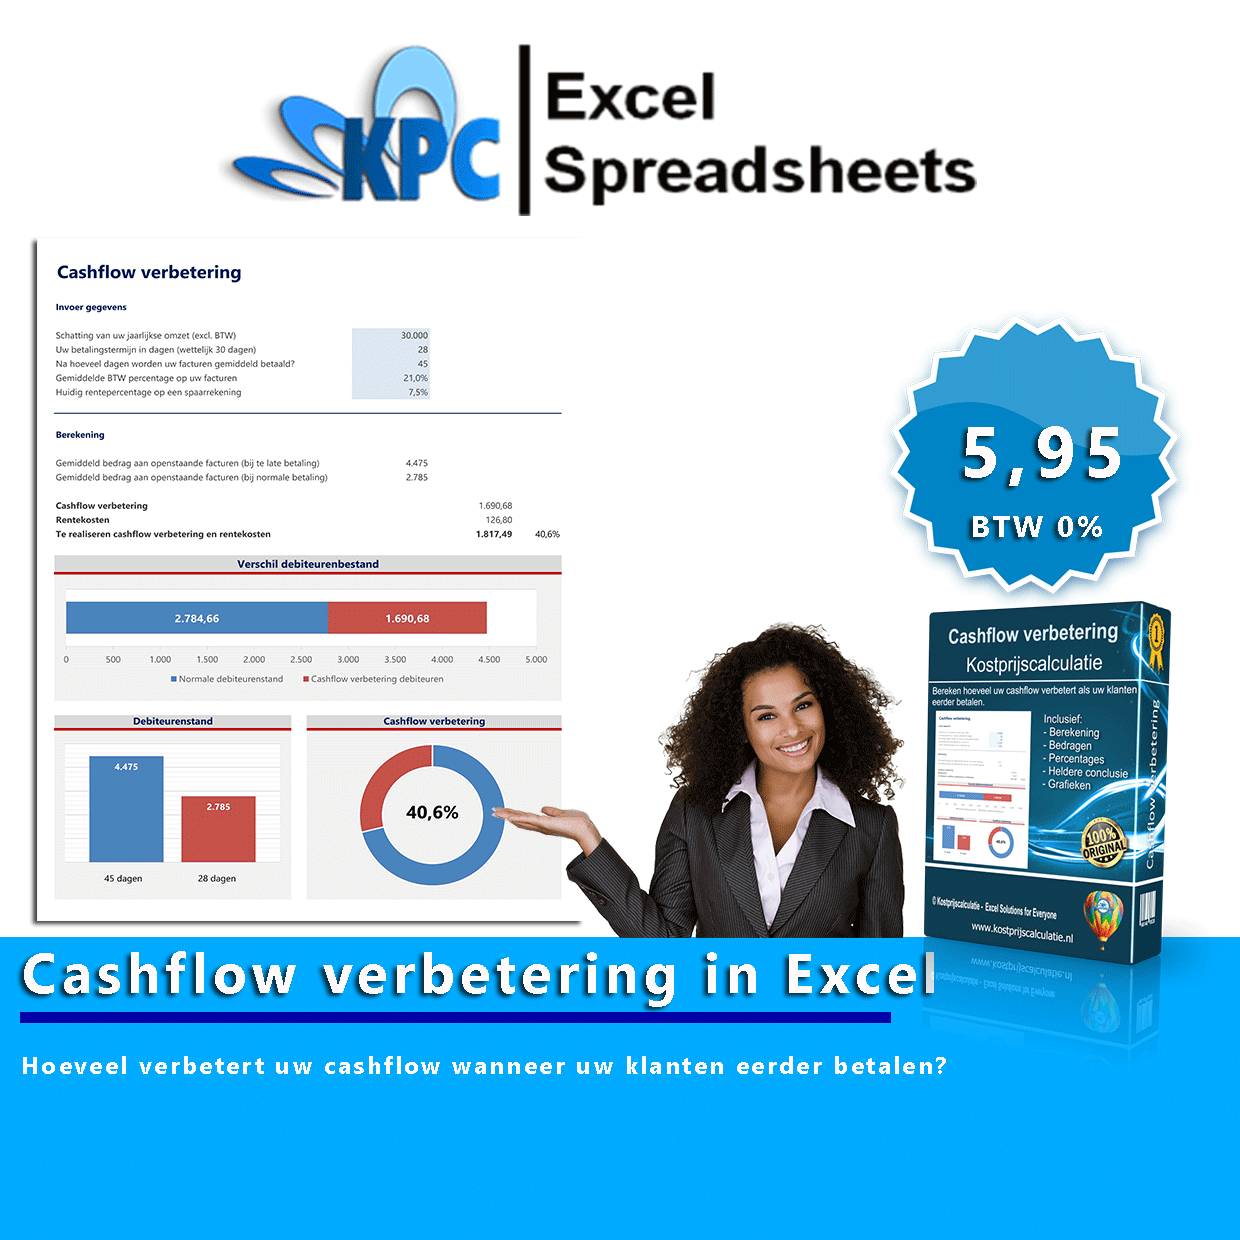 Cashflow verbetering in Excel